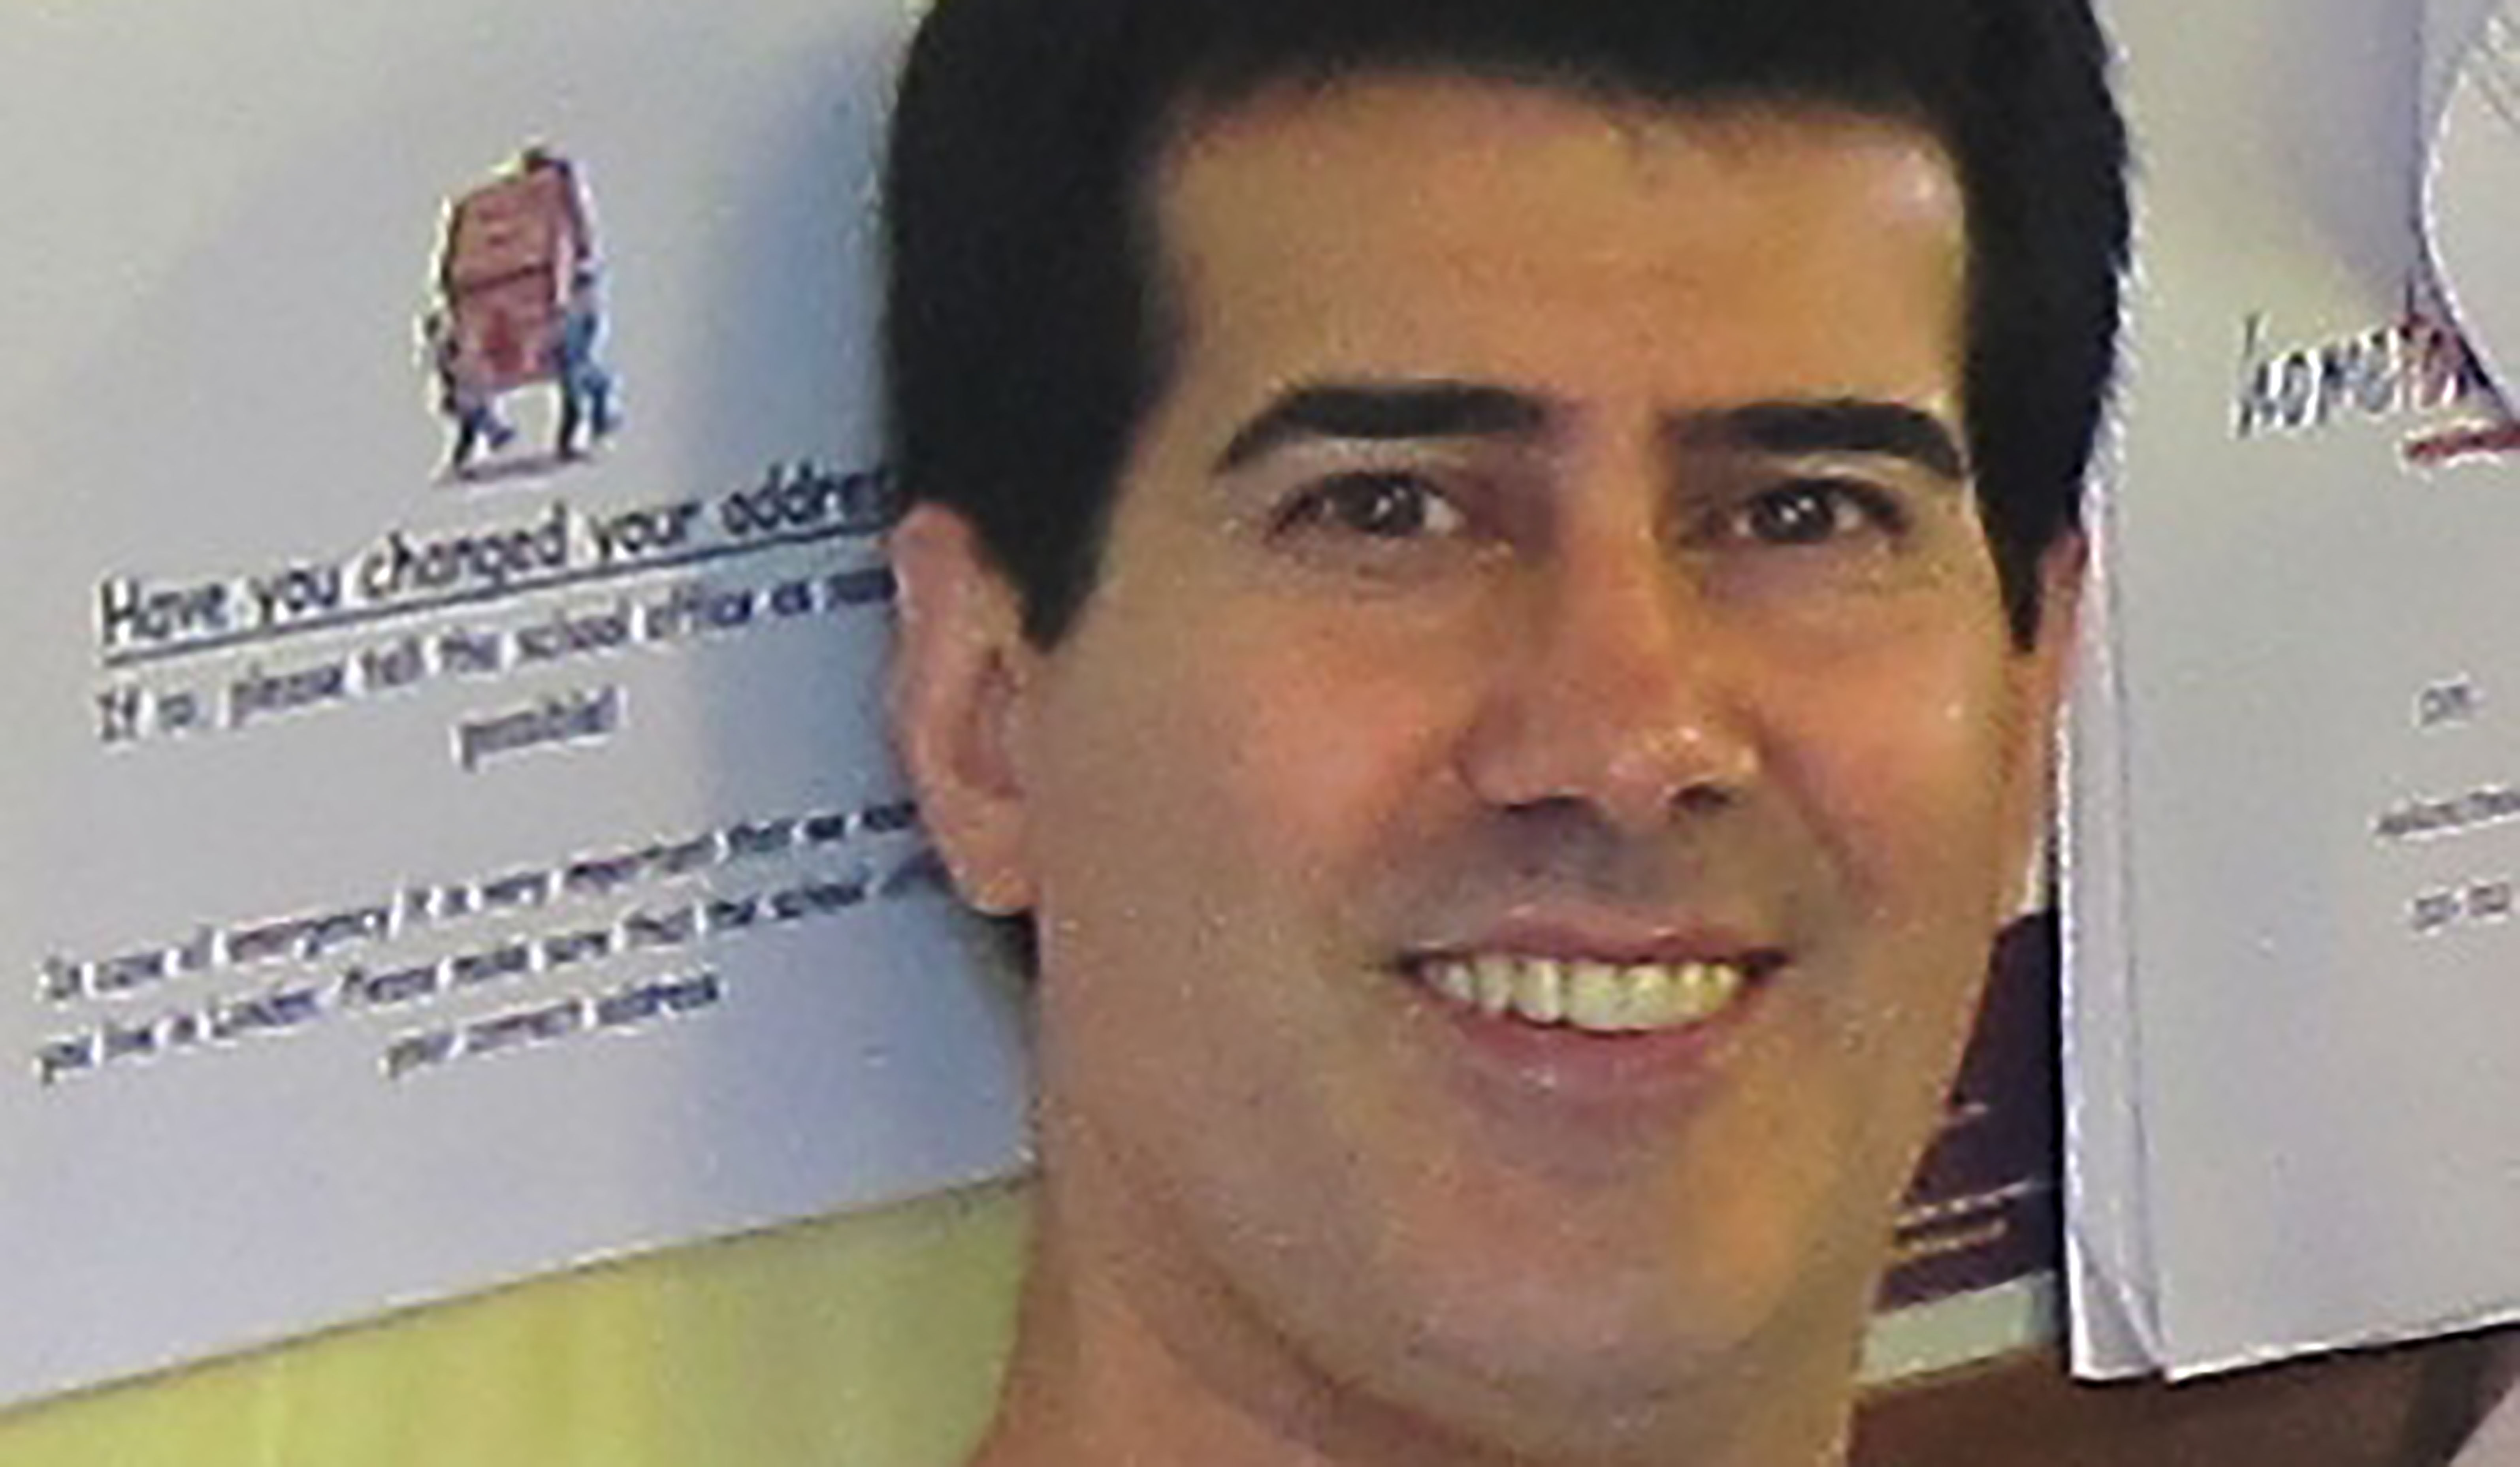 Ahmad Nazari